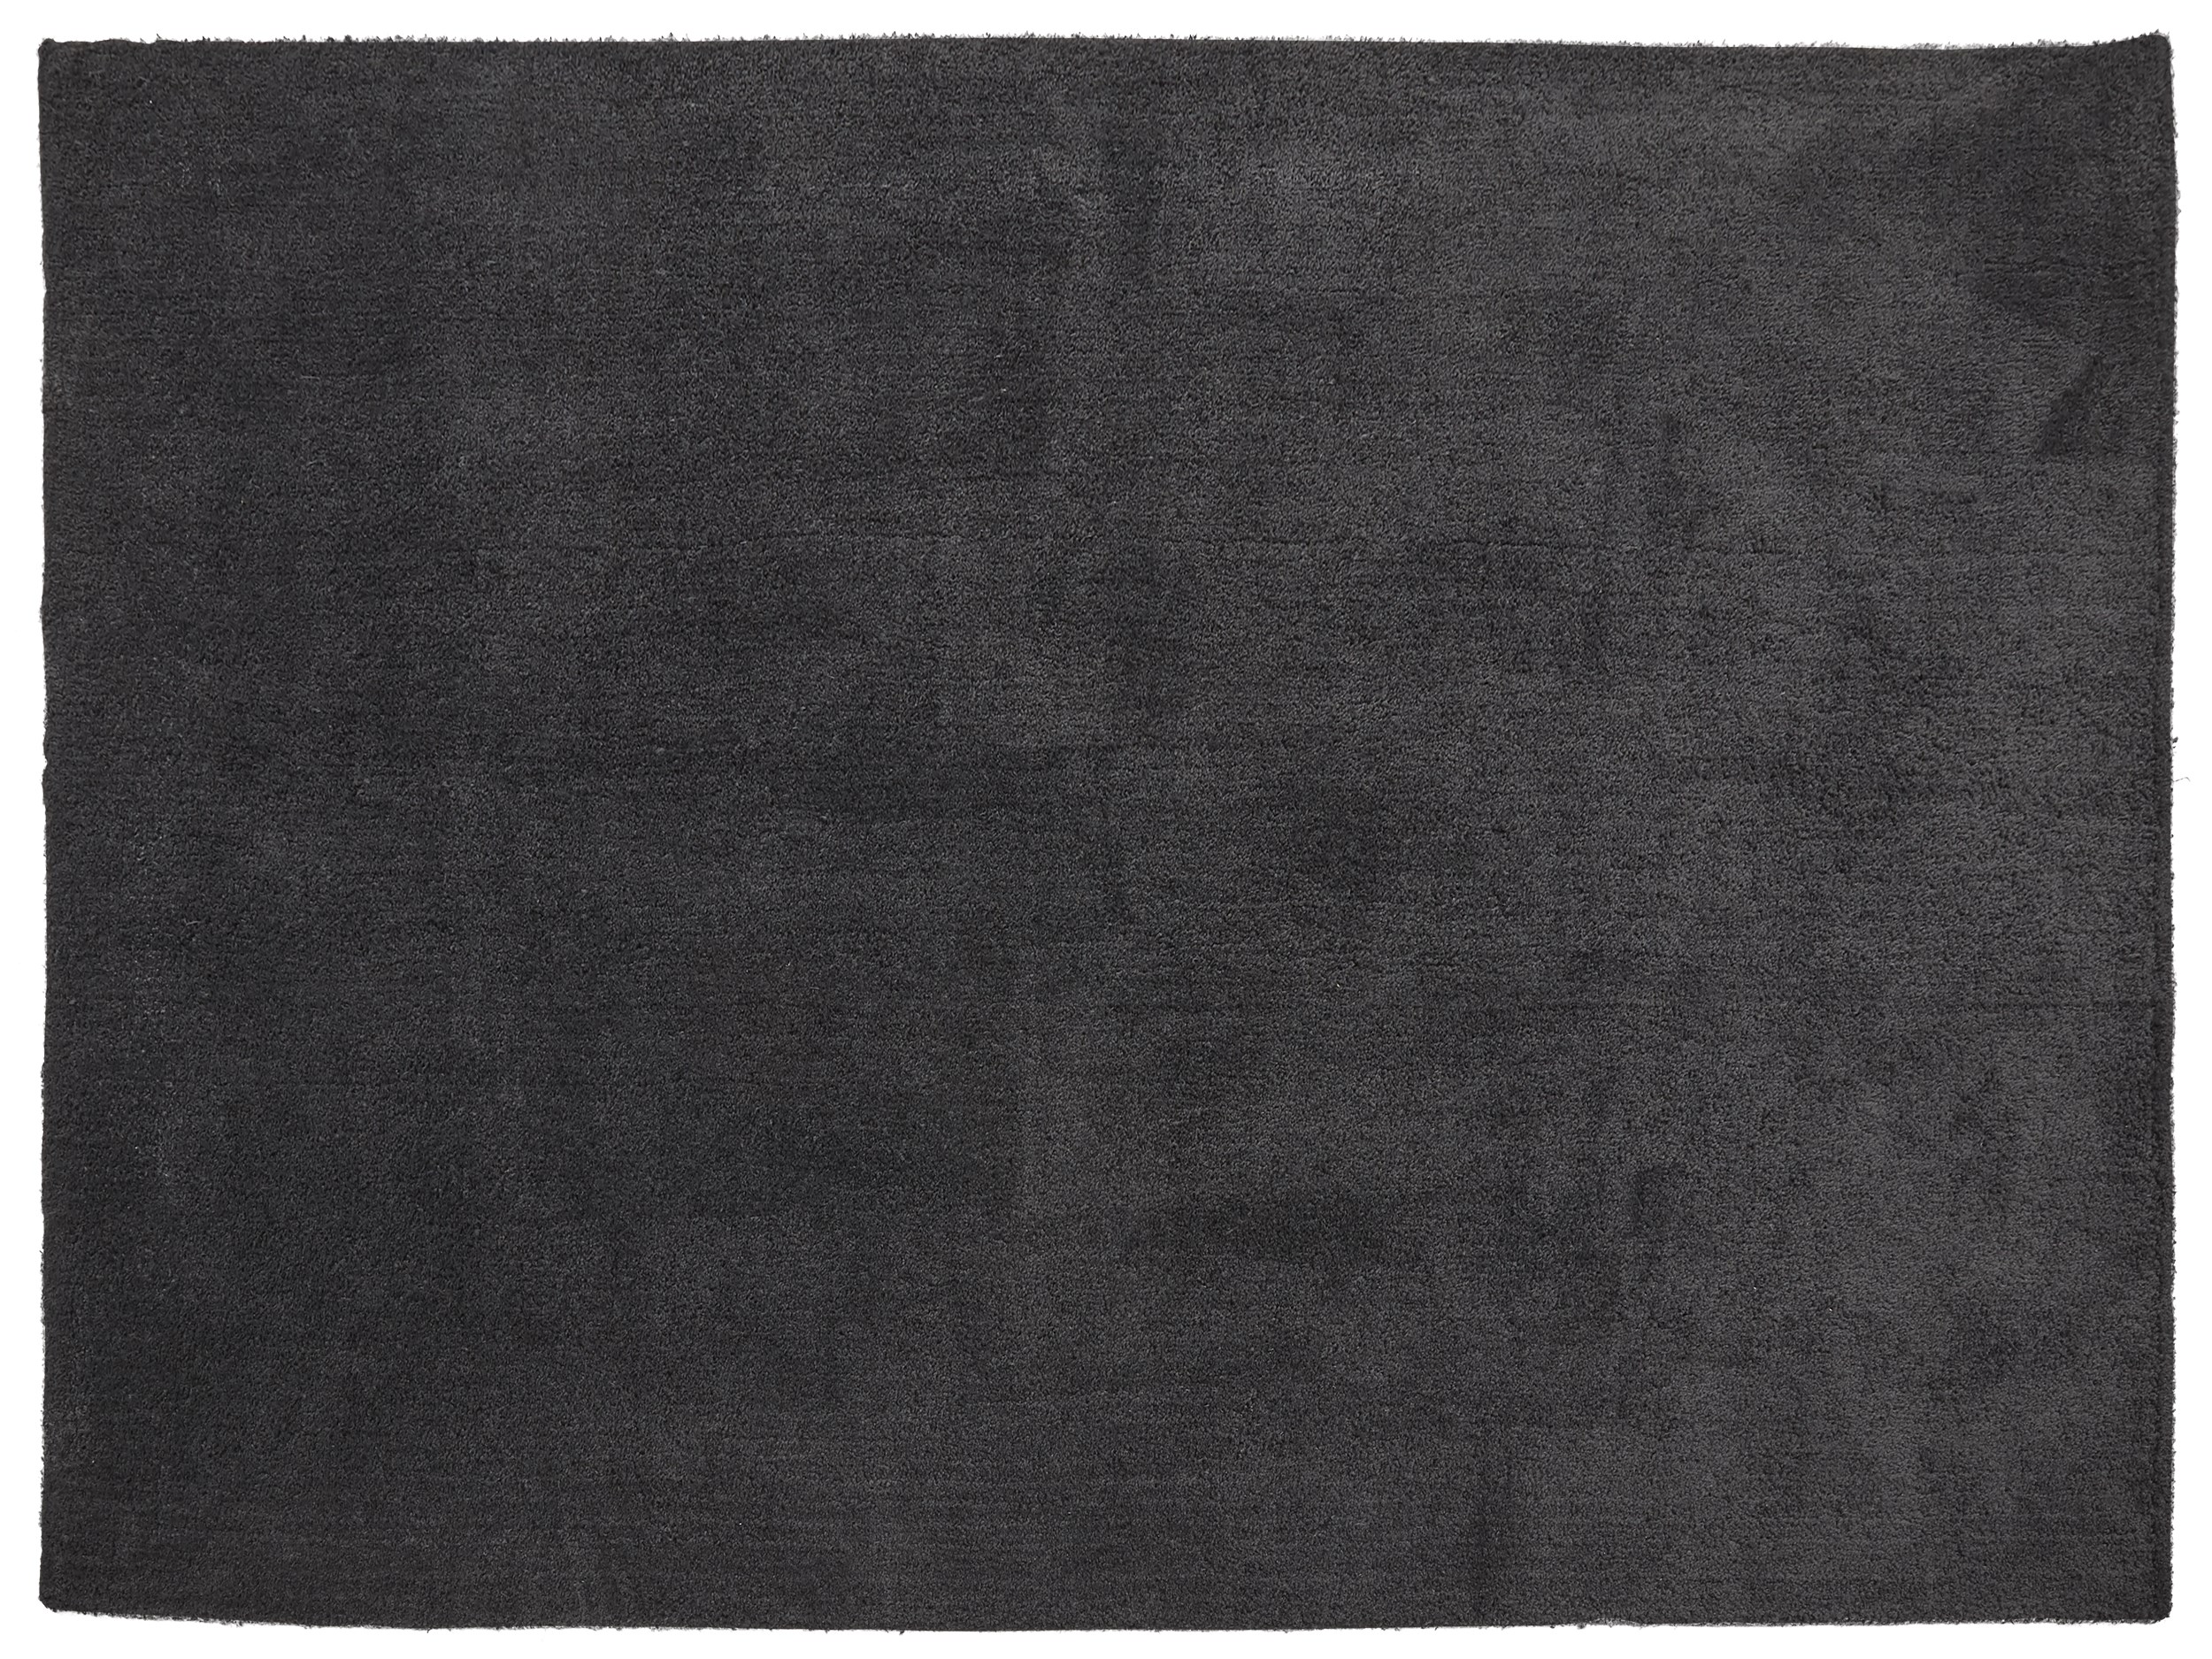 Addie Tuftet tæppe 160 x 230 cm - Mørkegrå polyester